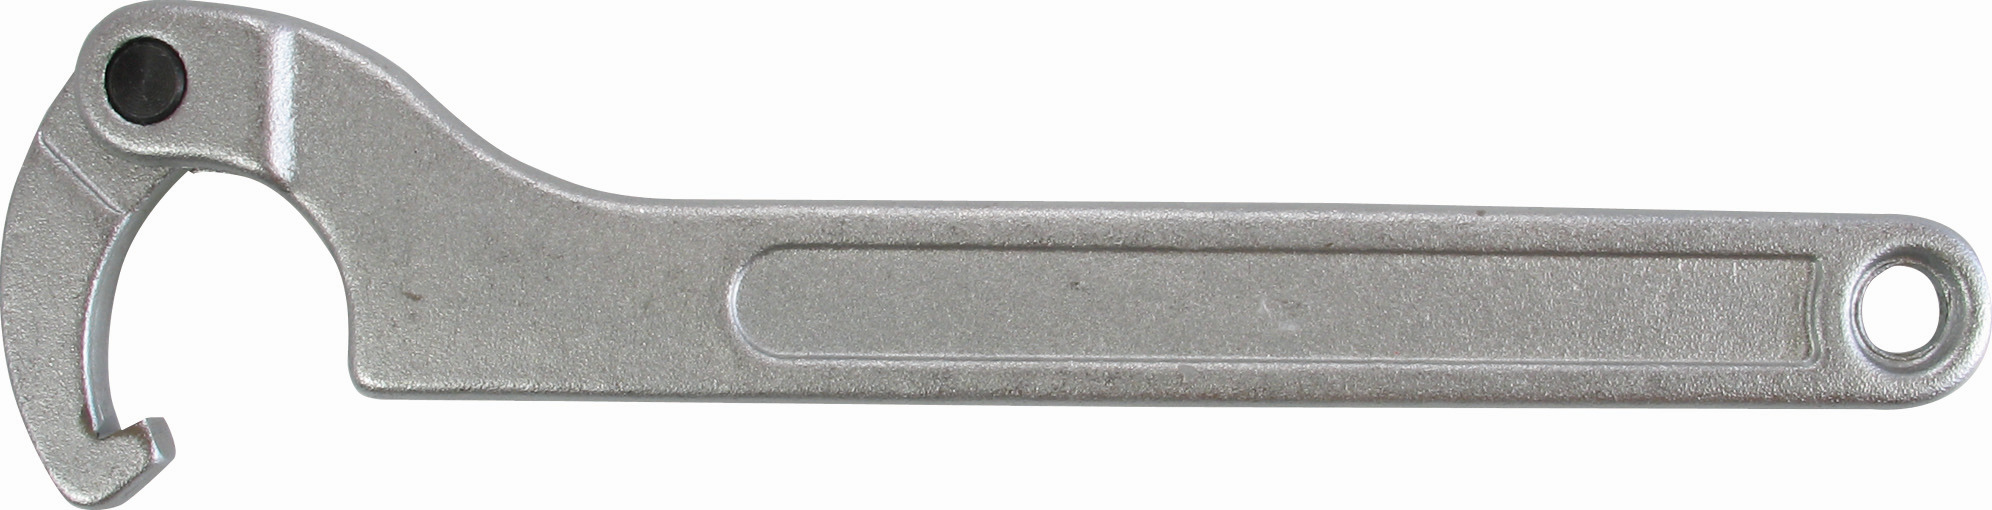 Kľúč hákový, kĺb, 50-80 mm